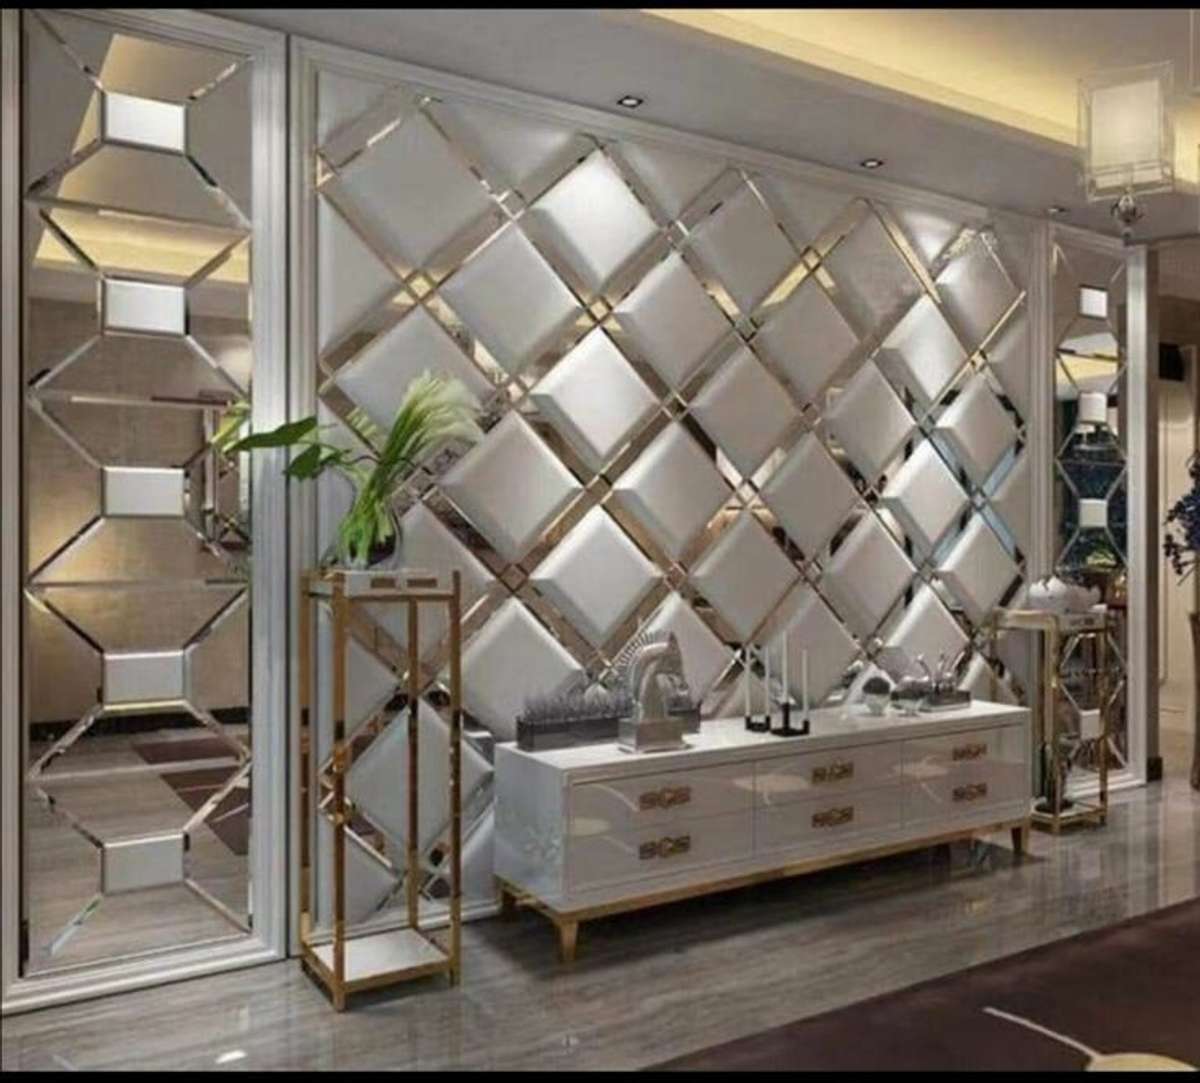 Furniture, Lighting, Storage, Bedroom Designs by Contractor Culture Interior, Delhi | Kolo